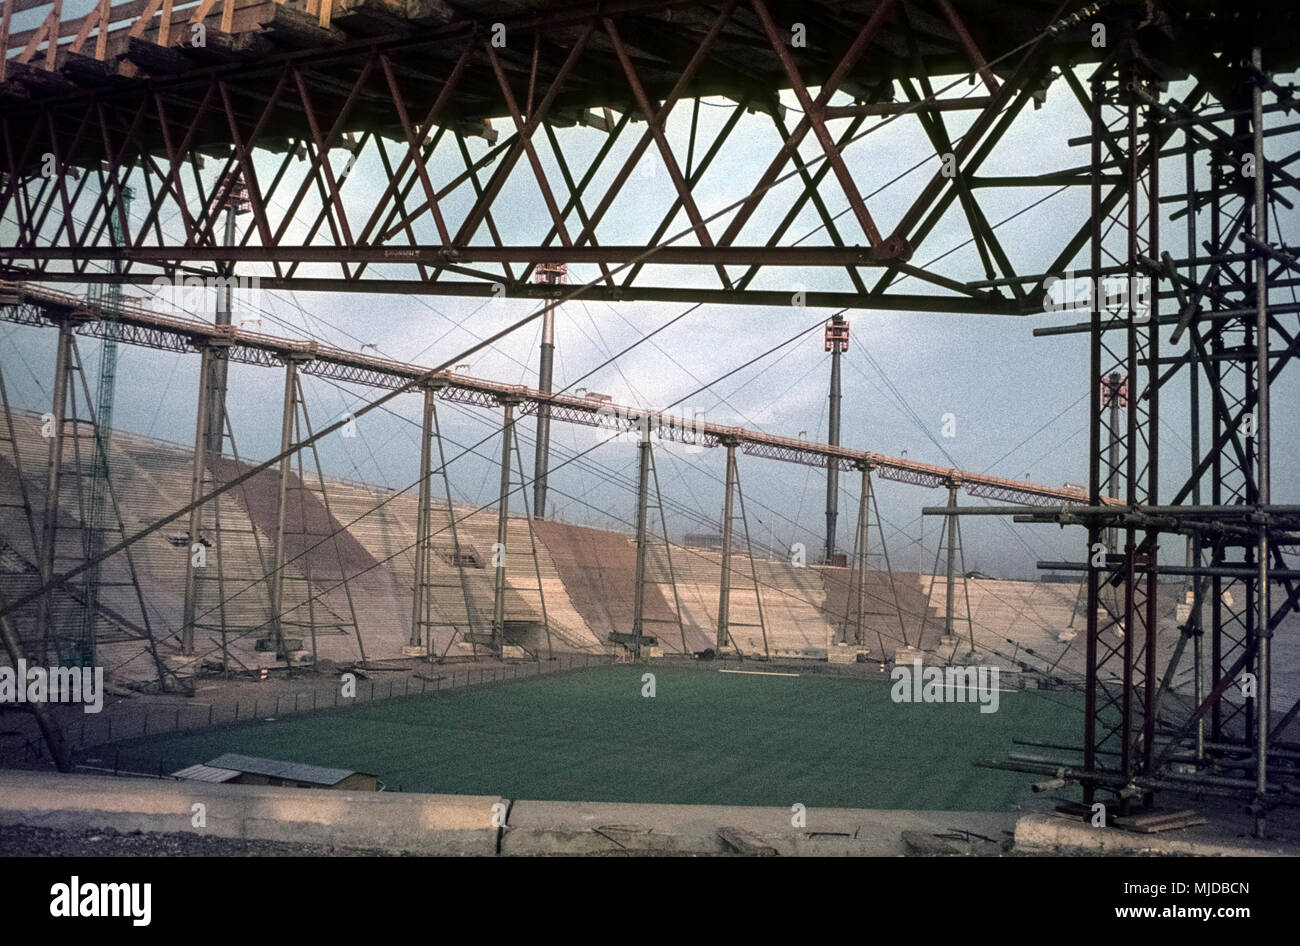 The Olympic Park of Munich under construction for the Olympic Games, 1970. Bau des Münchner Zeltdaches. Ringseil mit provisorischen Stützen und Winden Stock Photo